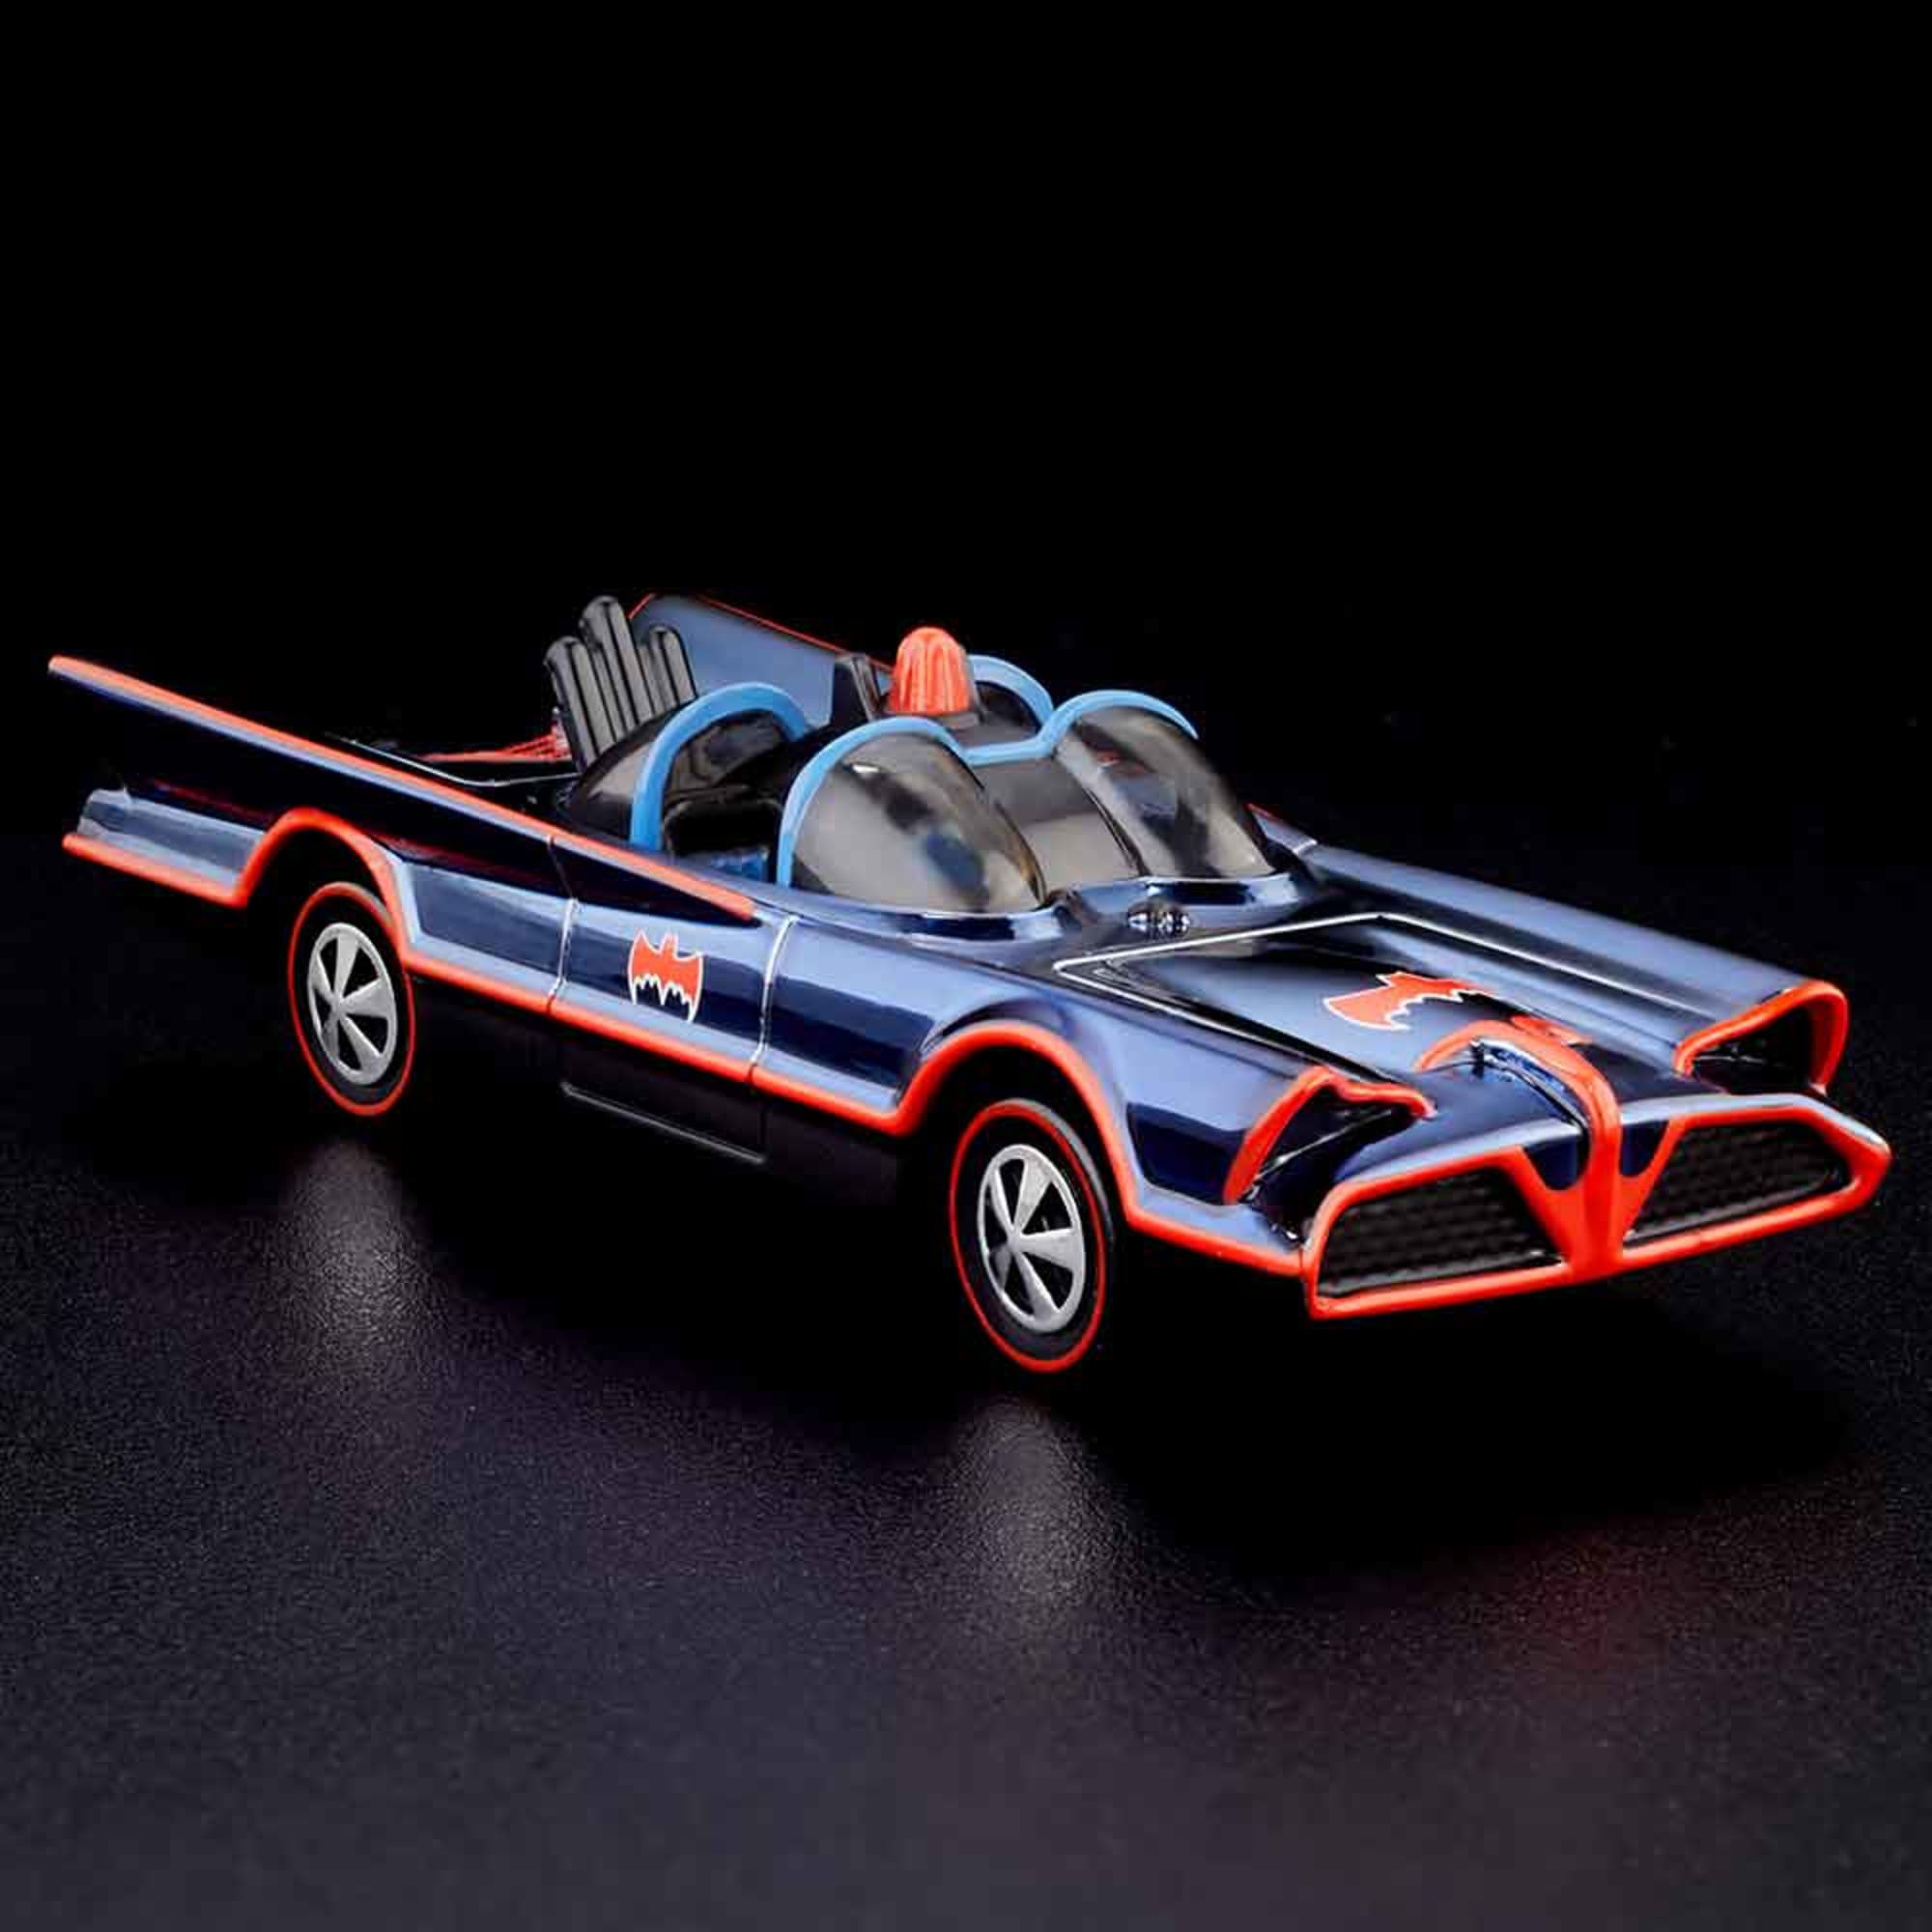 Batman - Mattel Hot Wheels Showdown - TV Series Batmobile